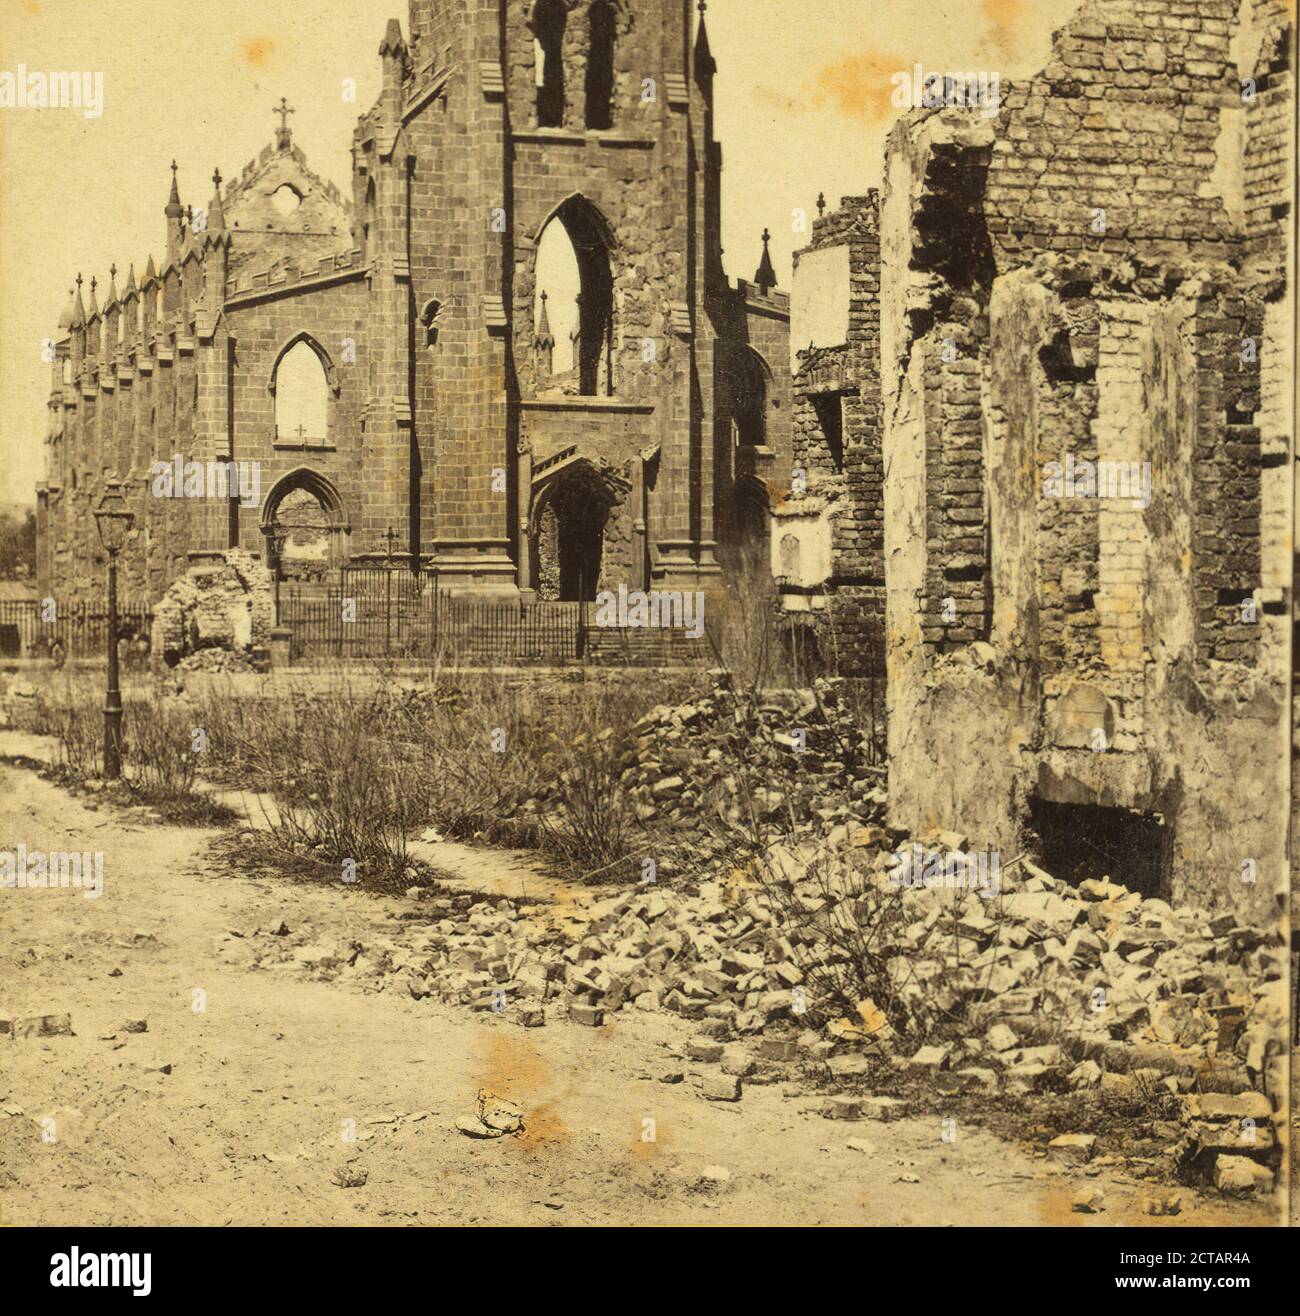 Ruines de la cathédrale catholique, Charleston, S. C. vue de face, E. & H.T. Anthony (firme), Brady, Mathew B. (1823 (ca.)-1896), 1861, États-Unis Banque D'Images